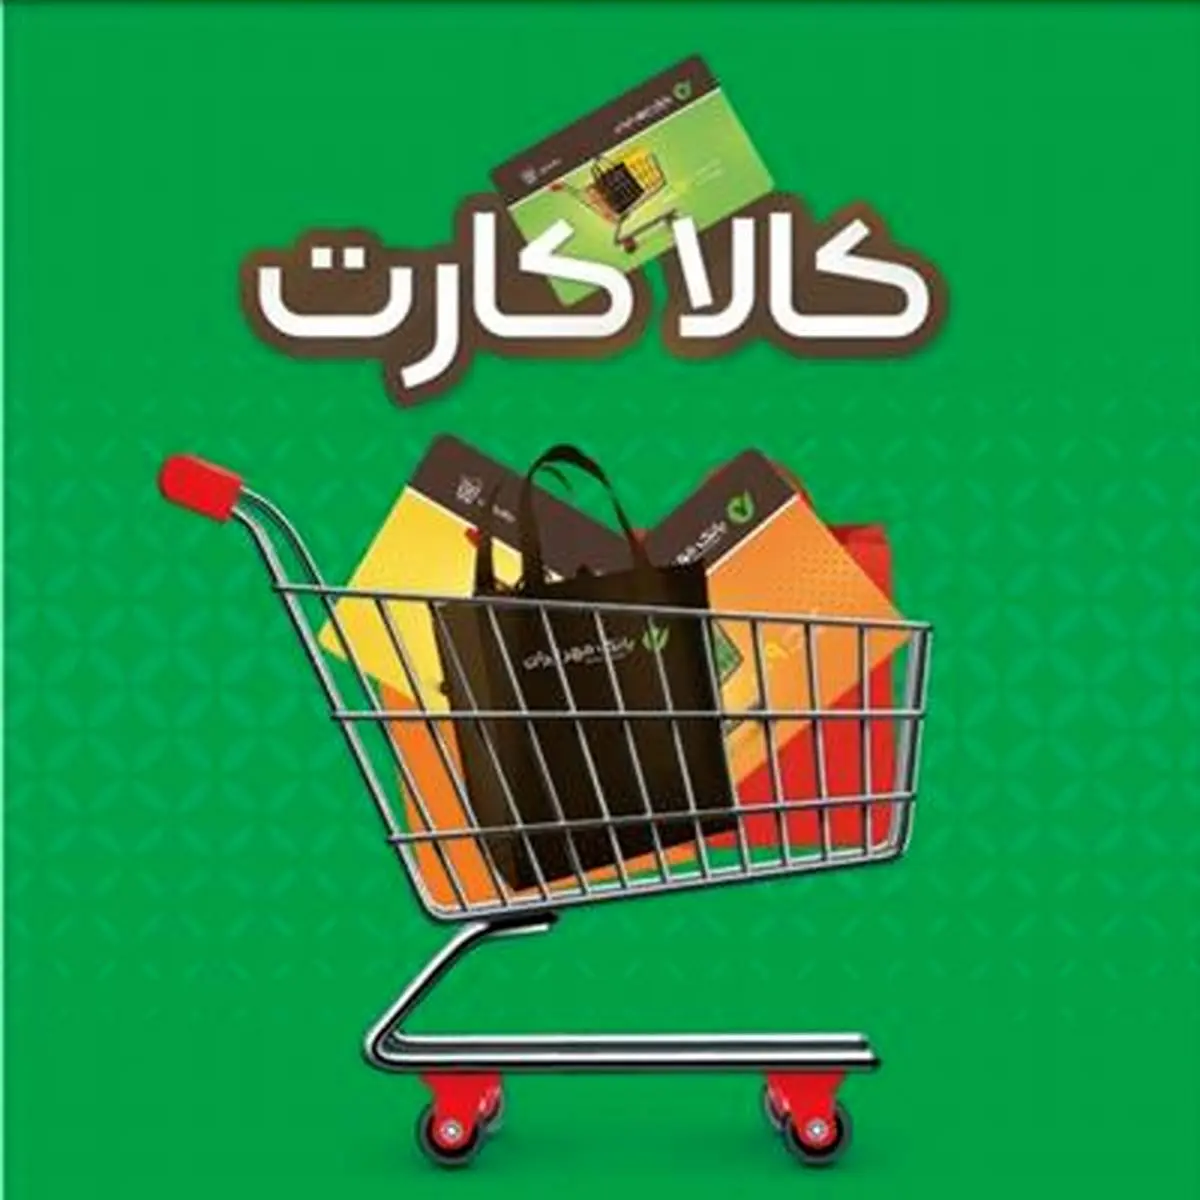 خرید اقساطی کالا ، با کالا کارت بانک مهر ایران

